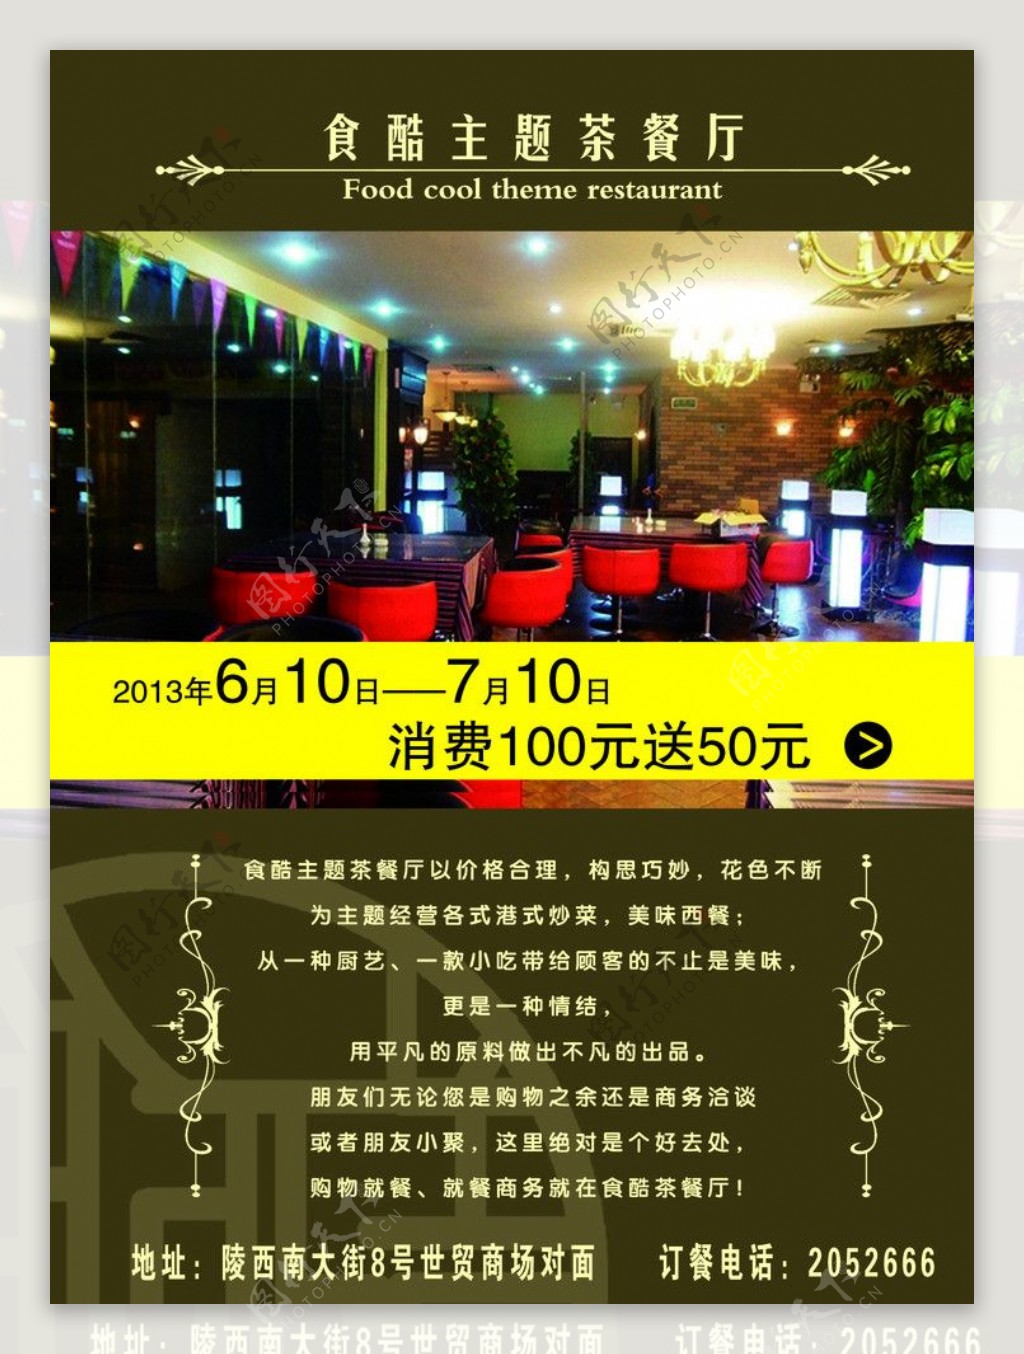 食酷主题茶餐厅彩页图片